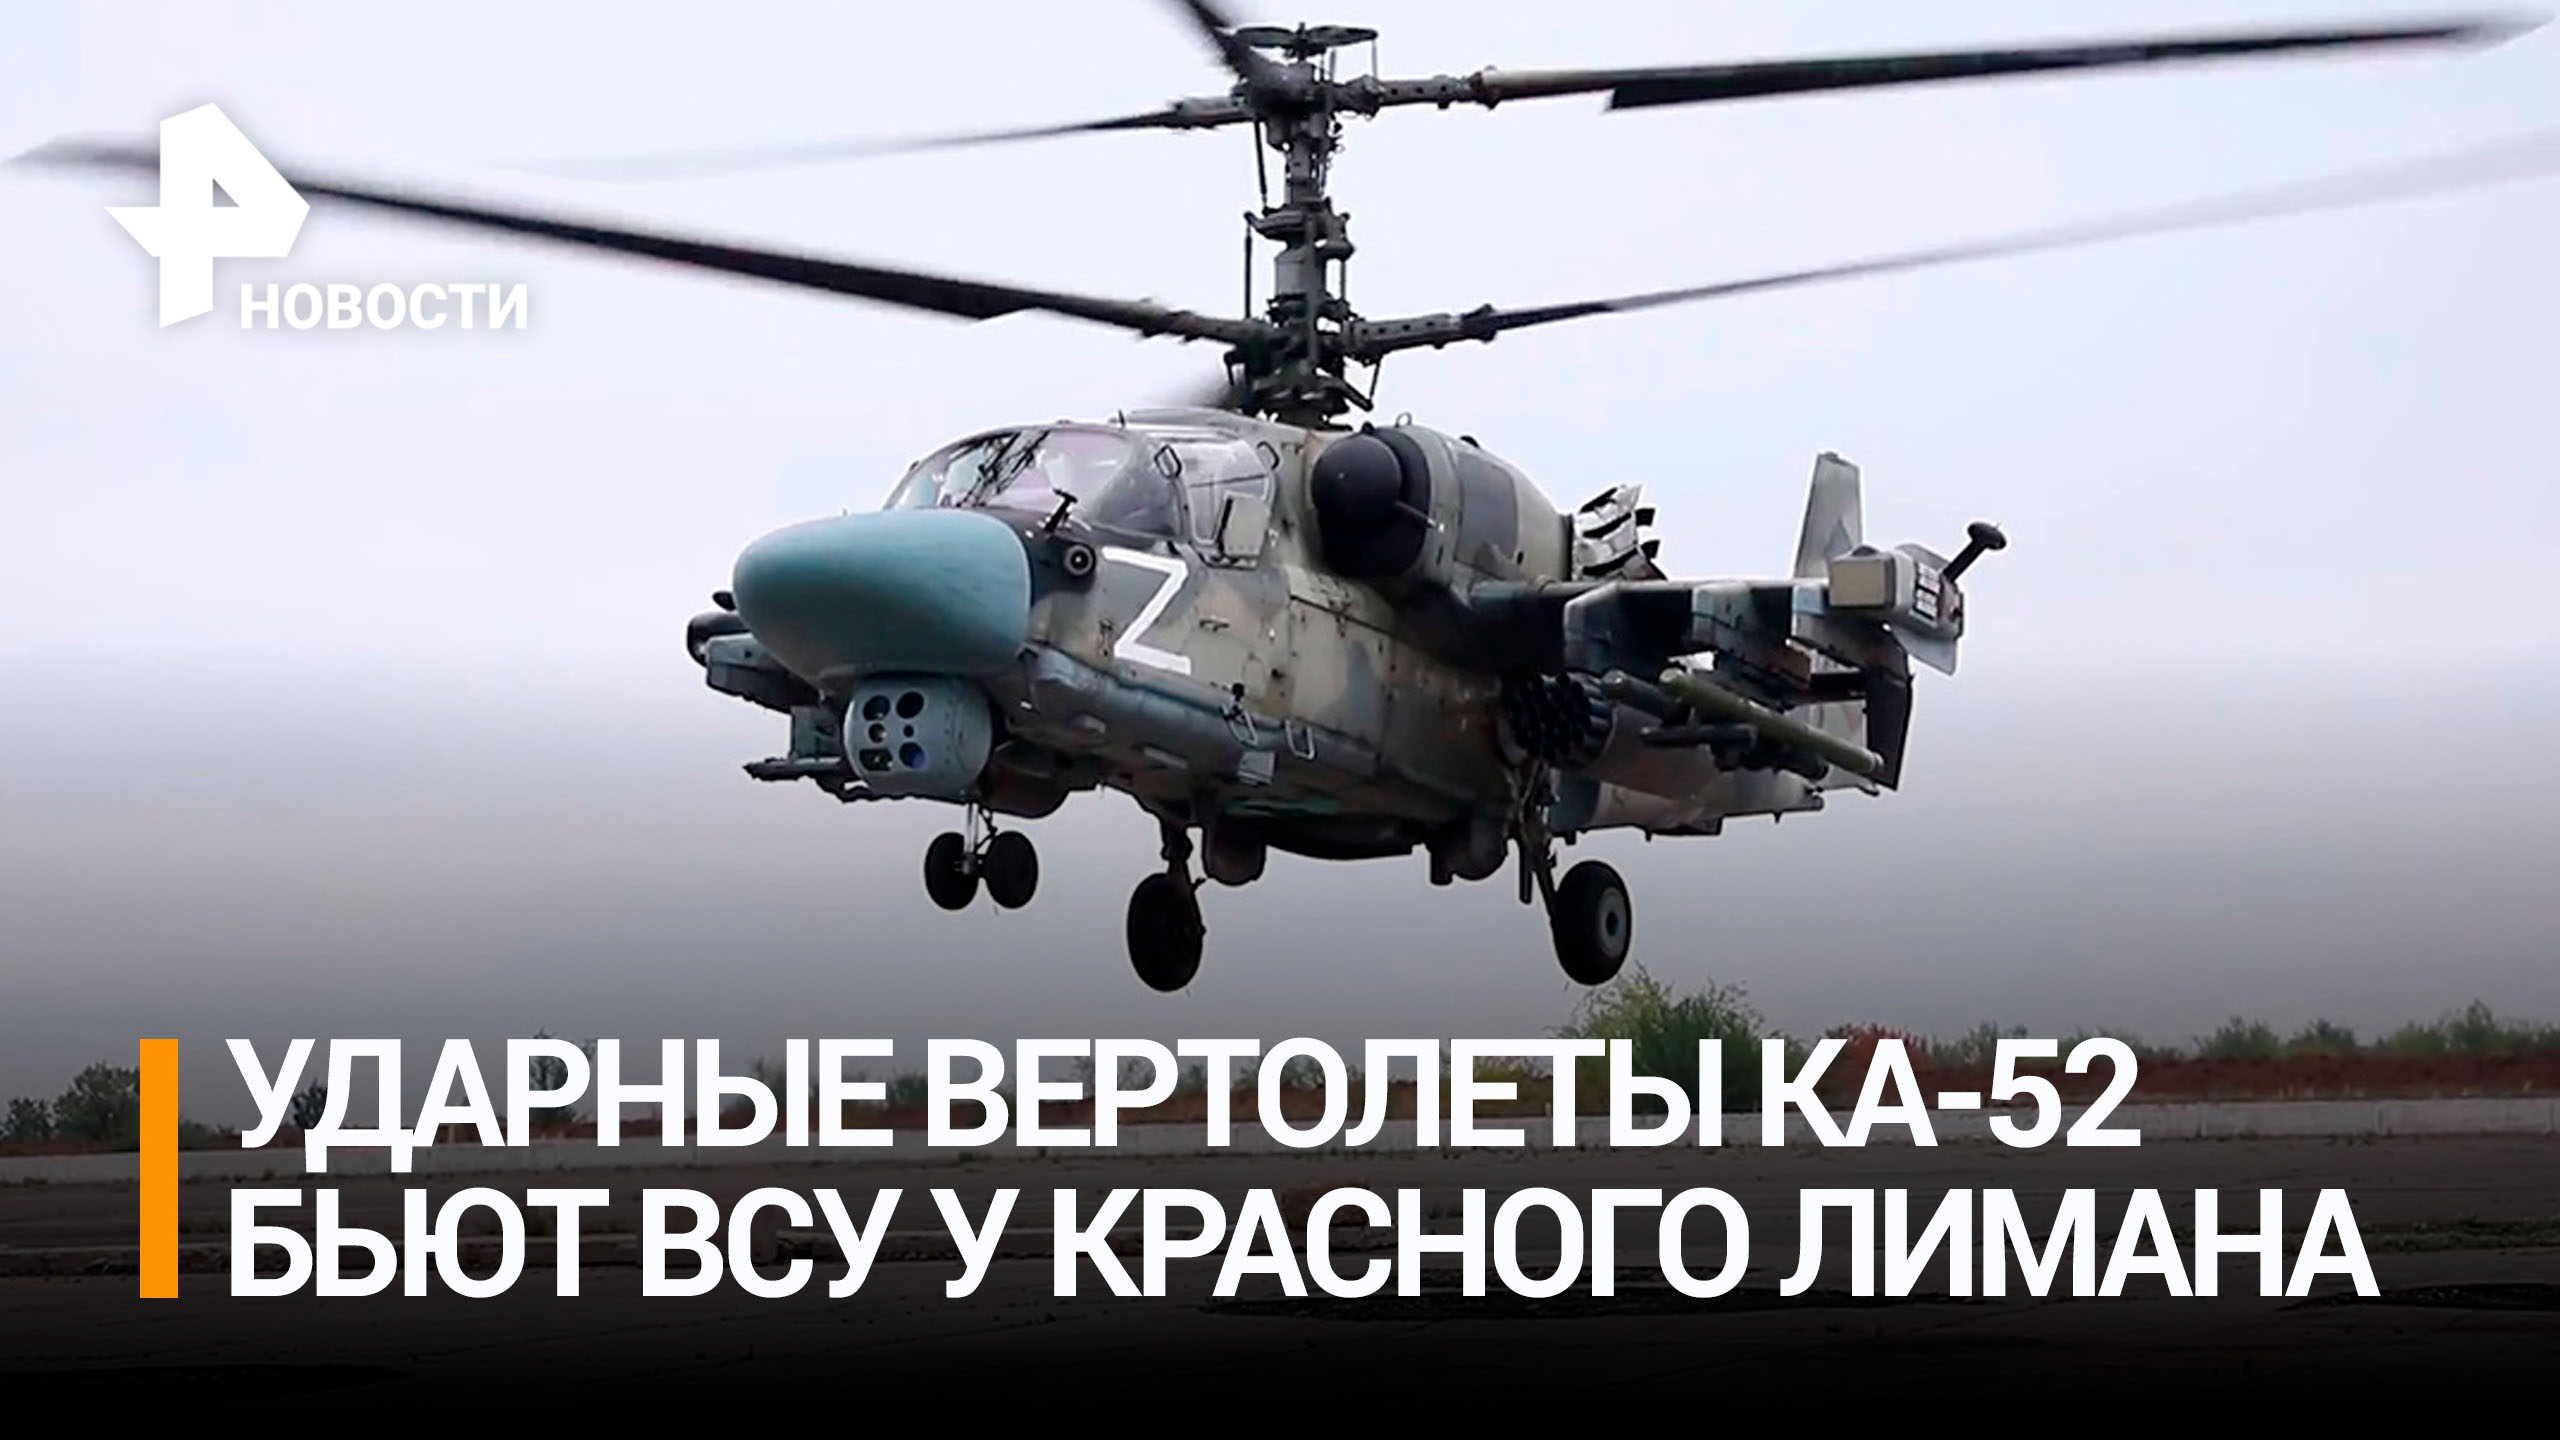 Вертолеты Ка-52 разгромили бронетехнику ВСУ на Краснолиманском направлении / РЕН Новости